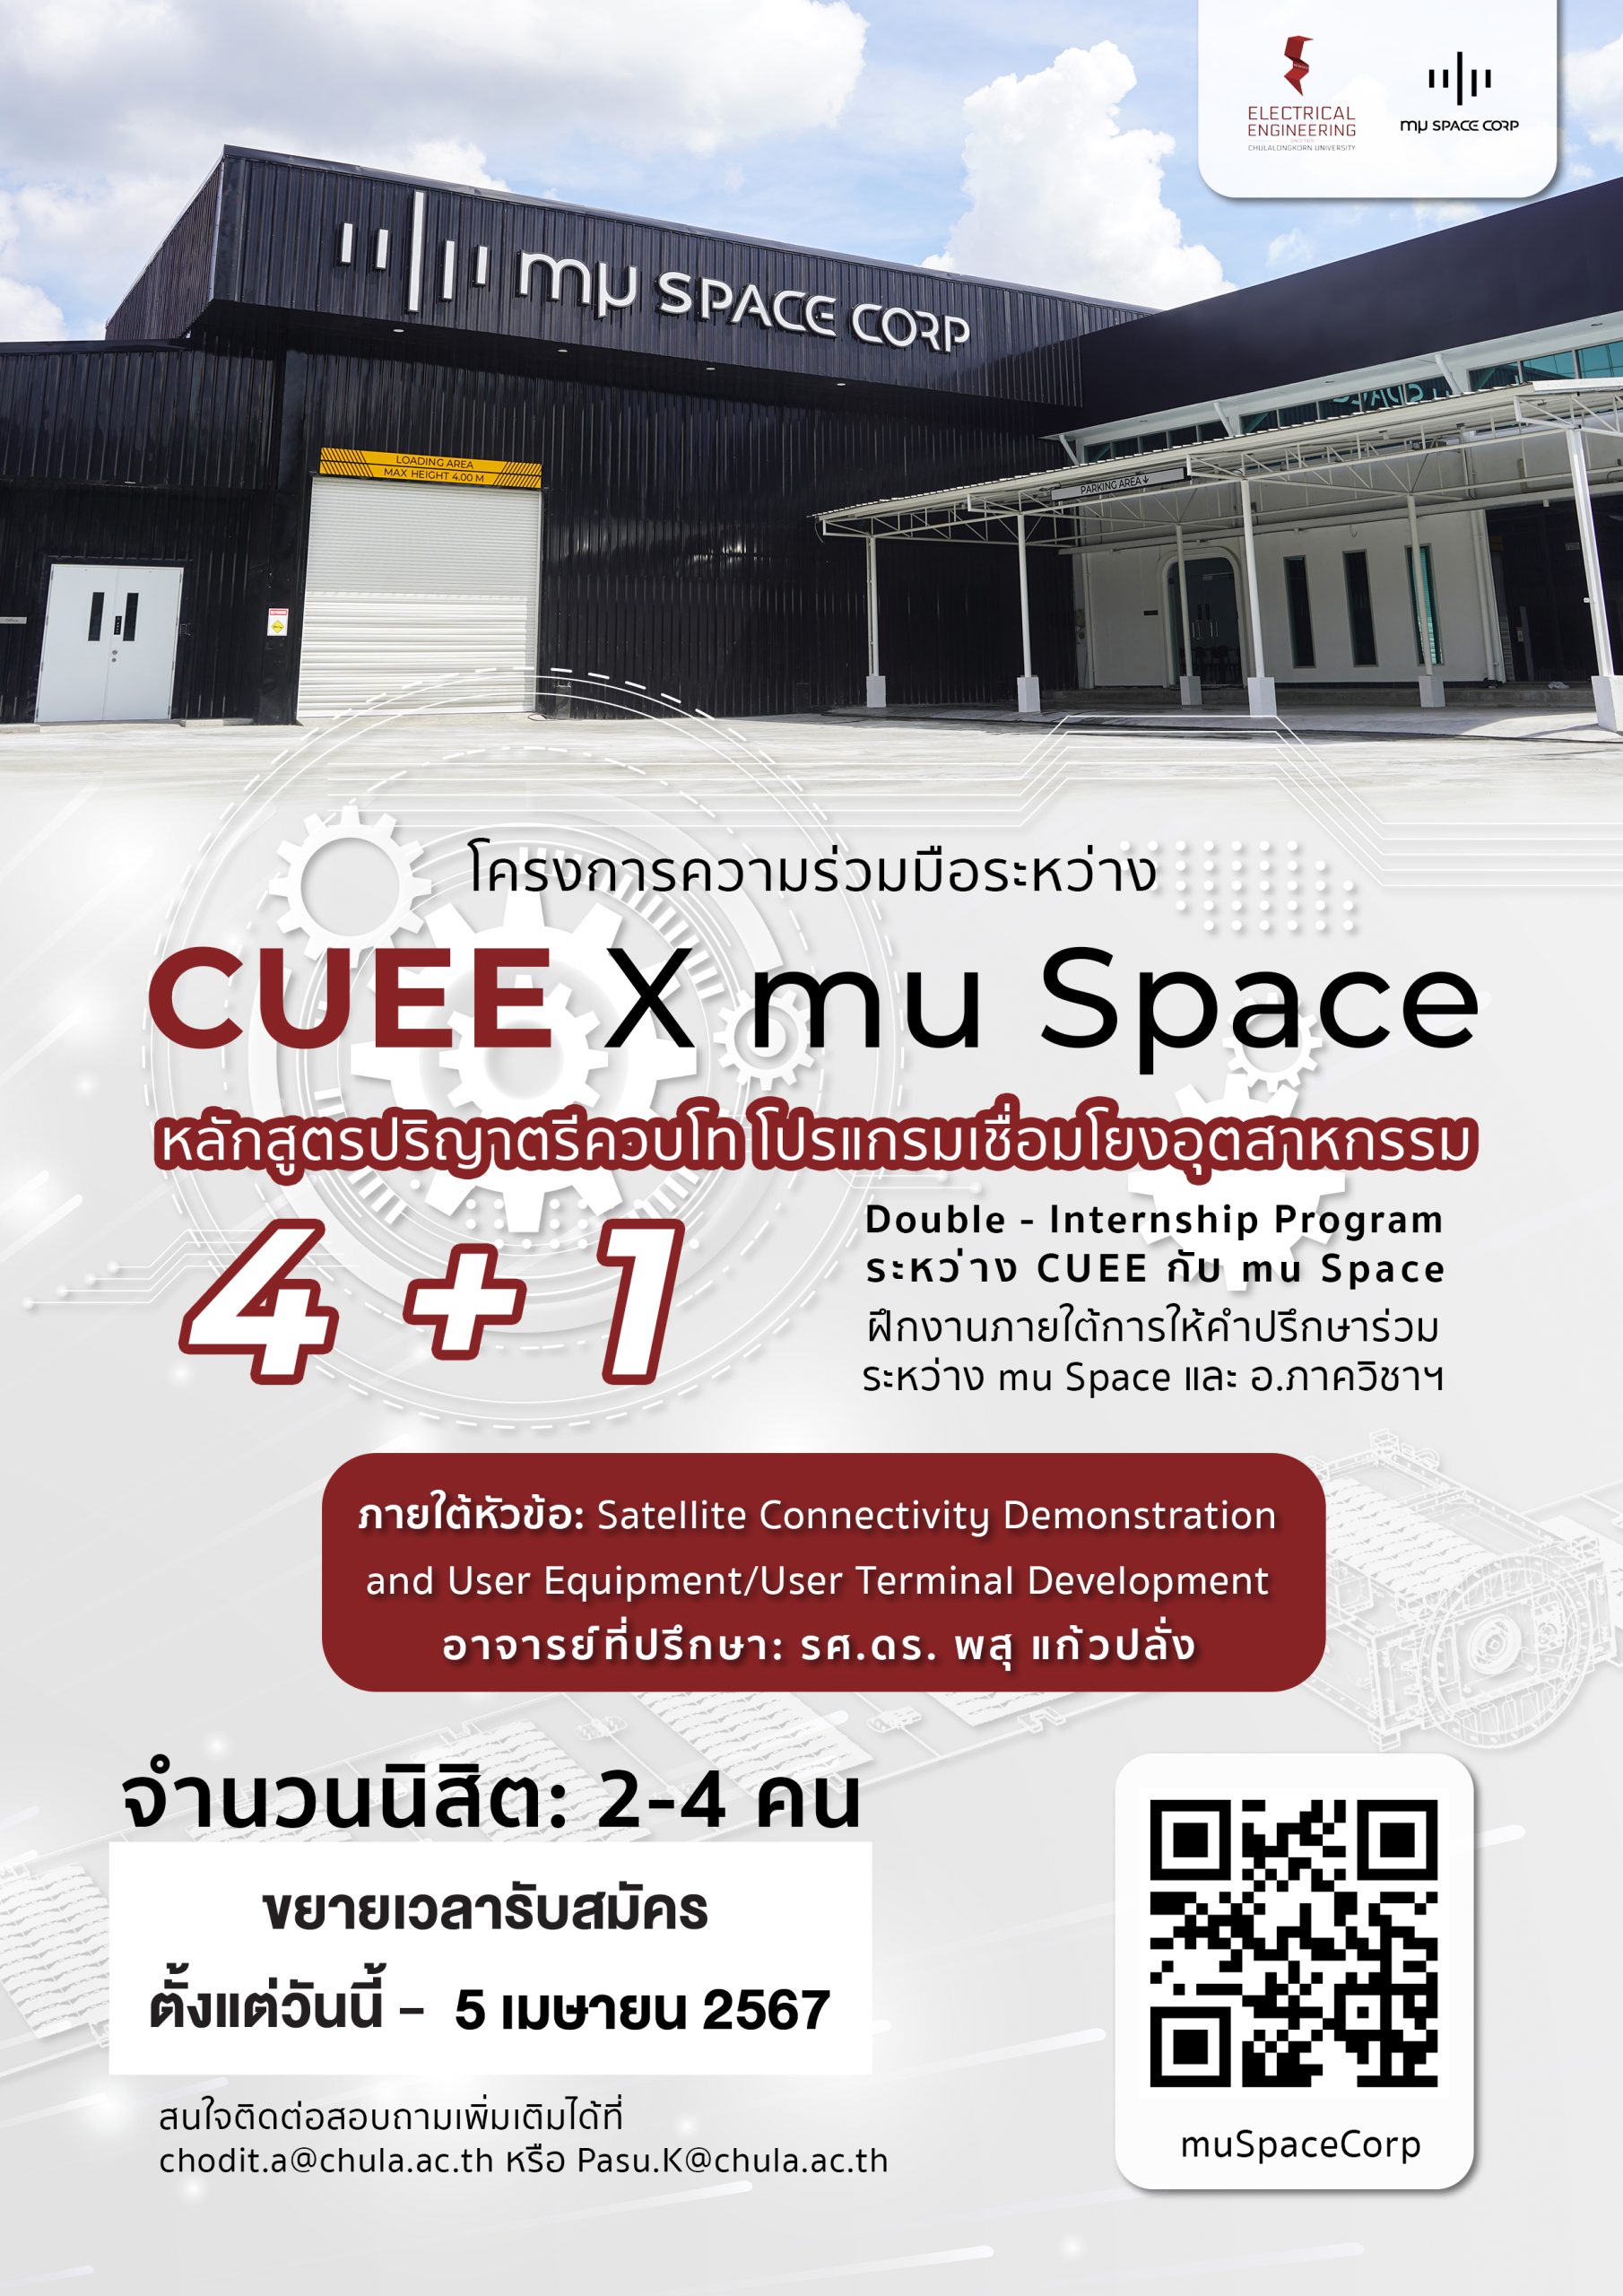 ขยายเวลารับสมัครหลักสูตรปริญญาตรีควบโท 4+1 โปรแกรมเชื่อมโยงอุตสาหกรรม CUEE x mu Space สมัครตั้งแต่วันนี้ - 5 เมษายน 2567